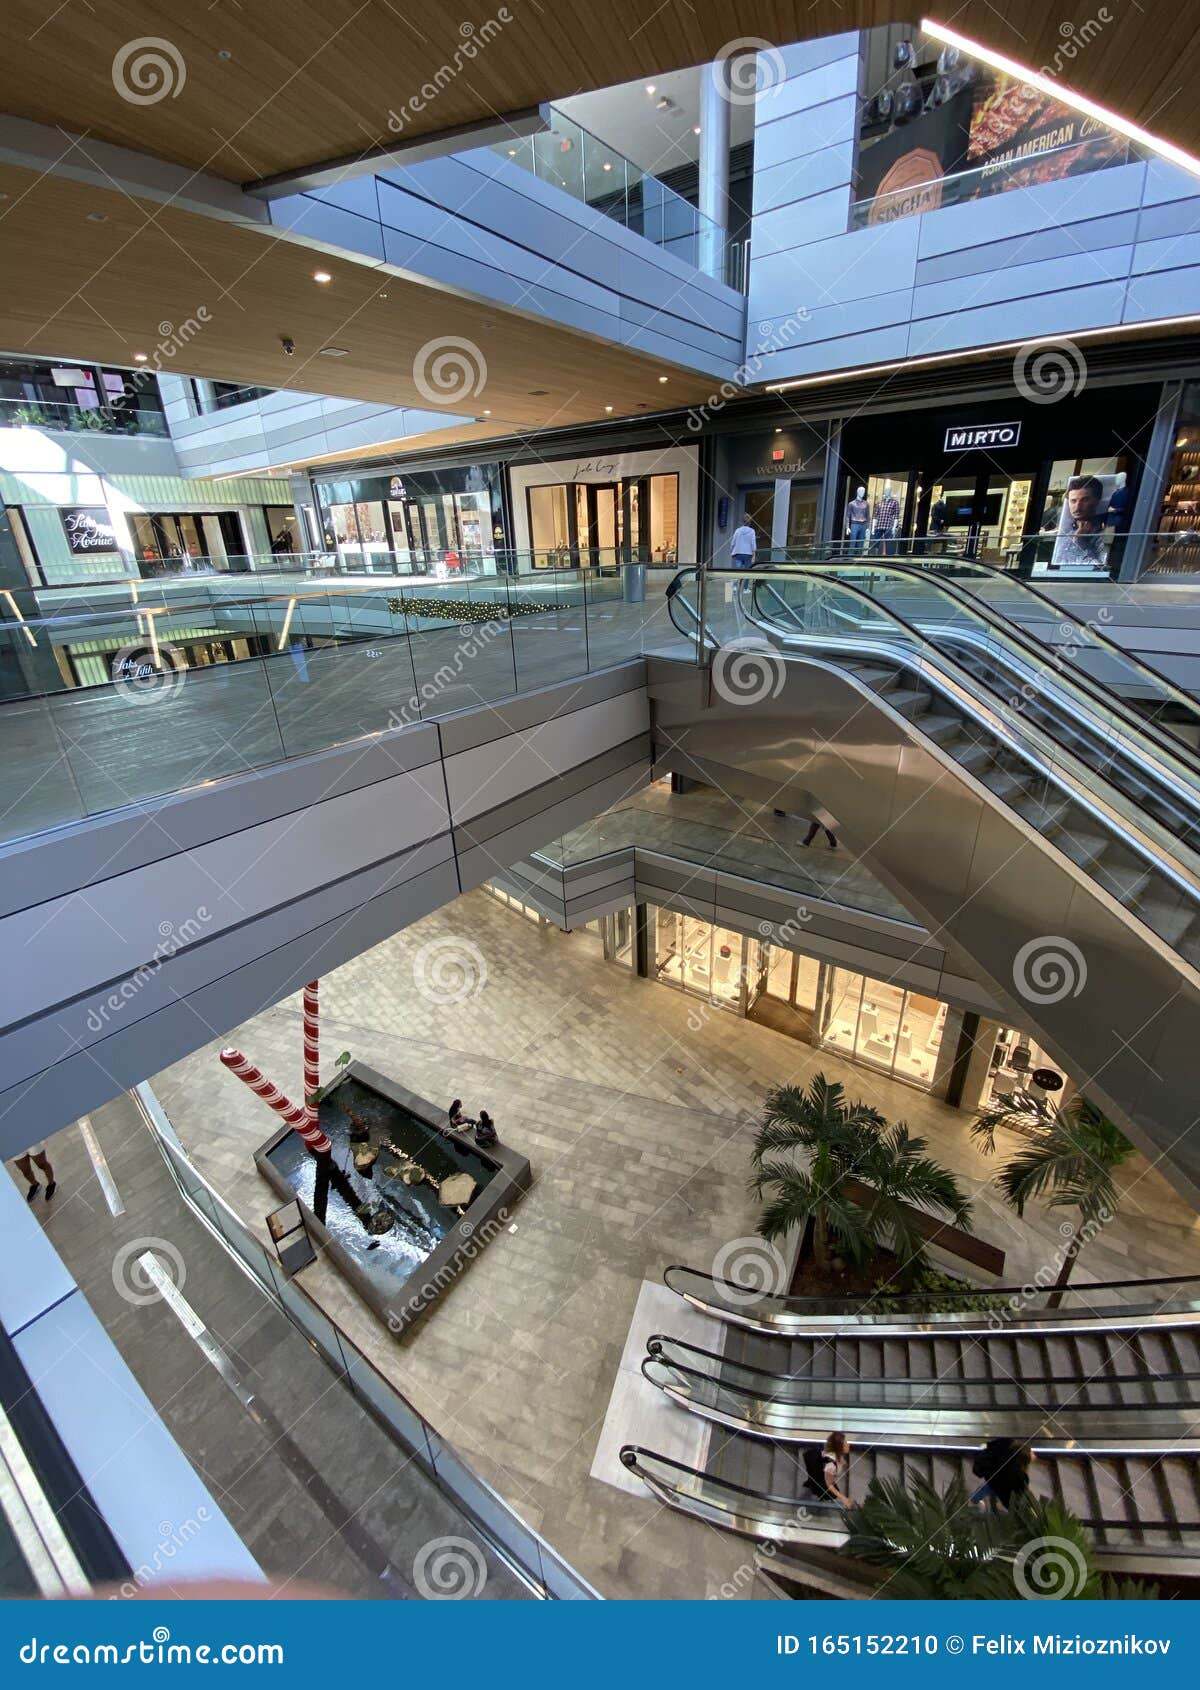 Photo of Brickell City Centre Upscale Shopping Mall Miami FL